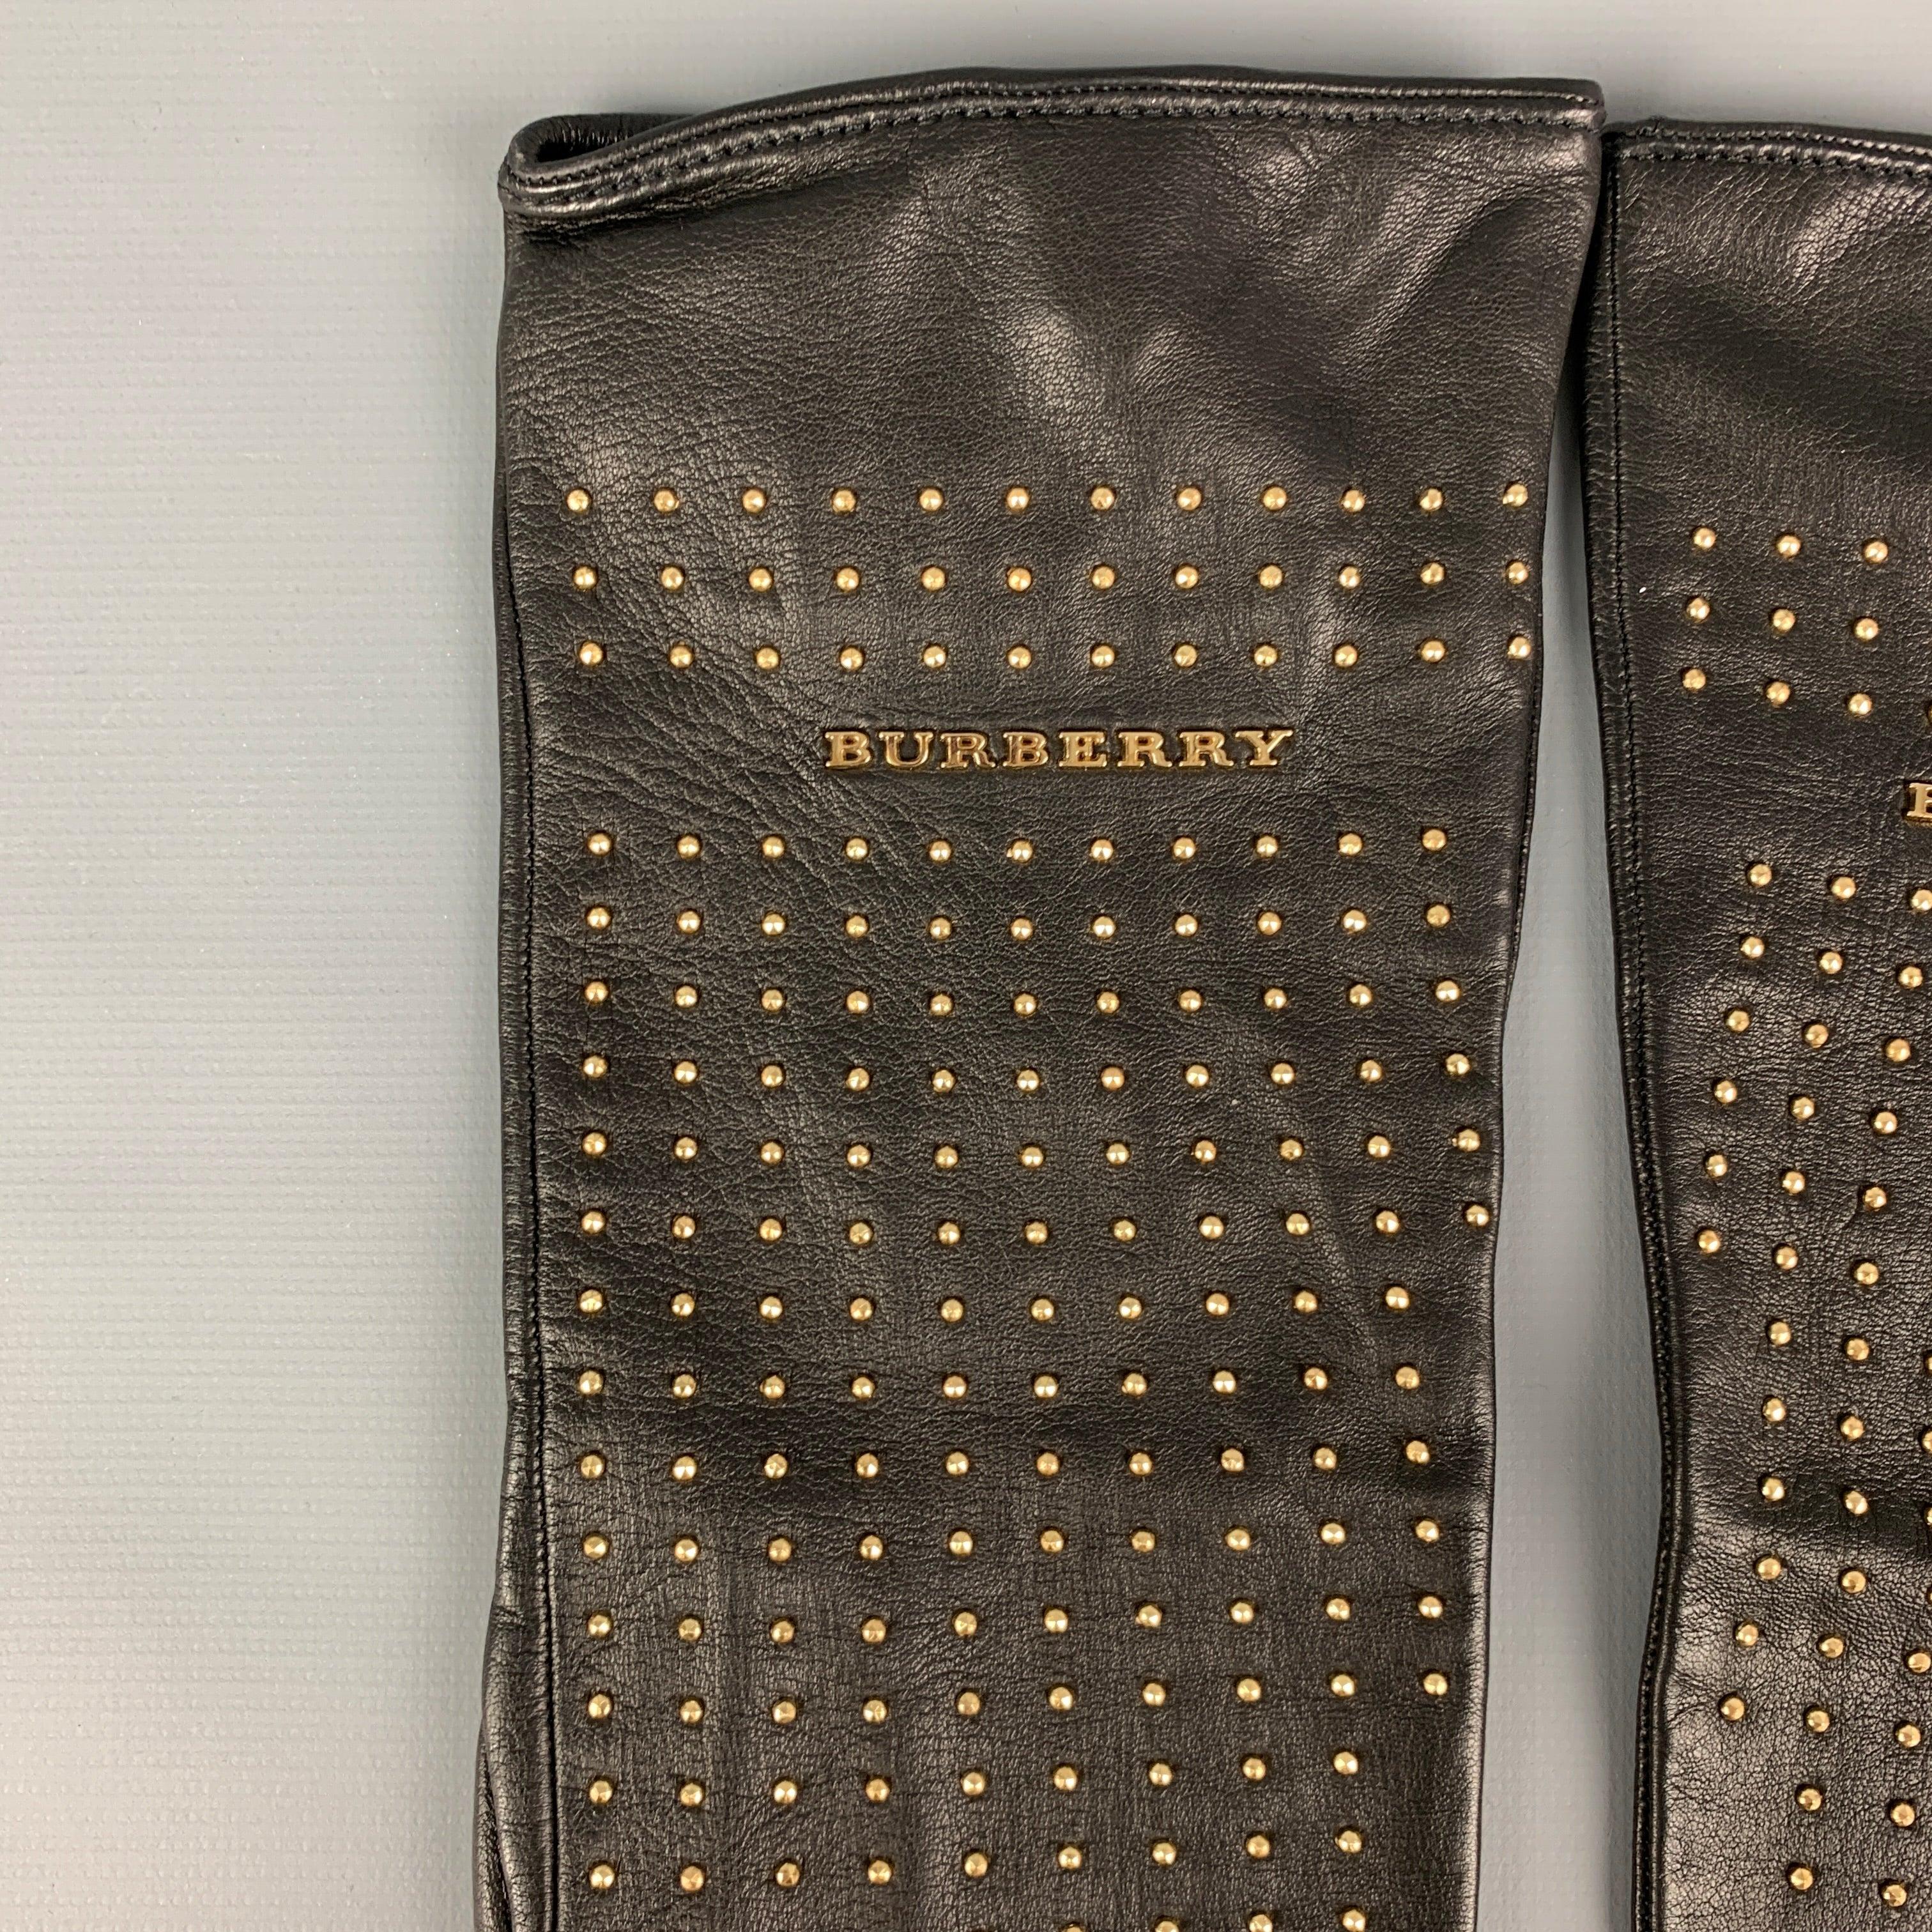 Die BURBERRY PRORSUM Handschuhe sind aus schwarzem Ziegenleder mit Seidenfutter und goldfarbenen Nietenbesatz. Hergestellt in Italien.
Neu mit Tags.
 

Markiert:   7 

Abmessungen: 
  Breite: 4 Zoll  Länge: 12 Zoll  
  
  
 
Referenz: